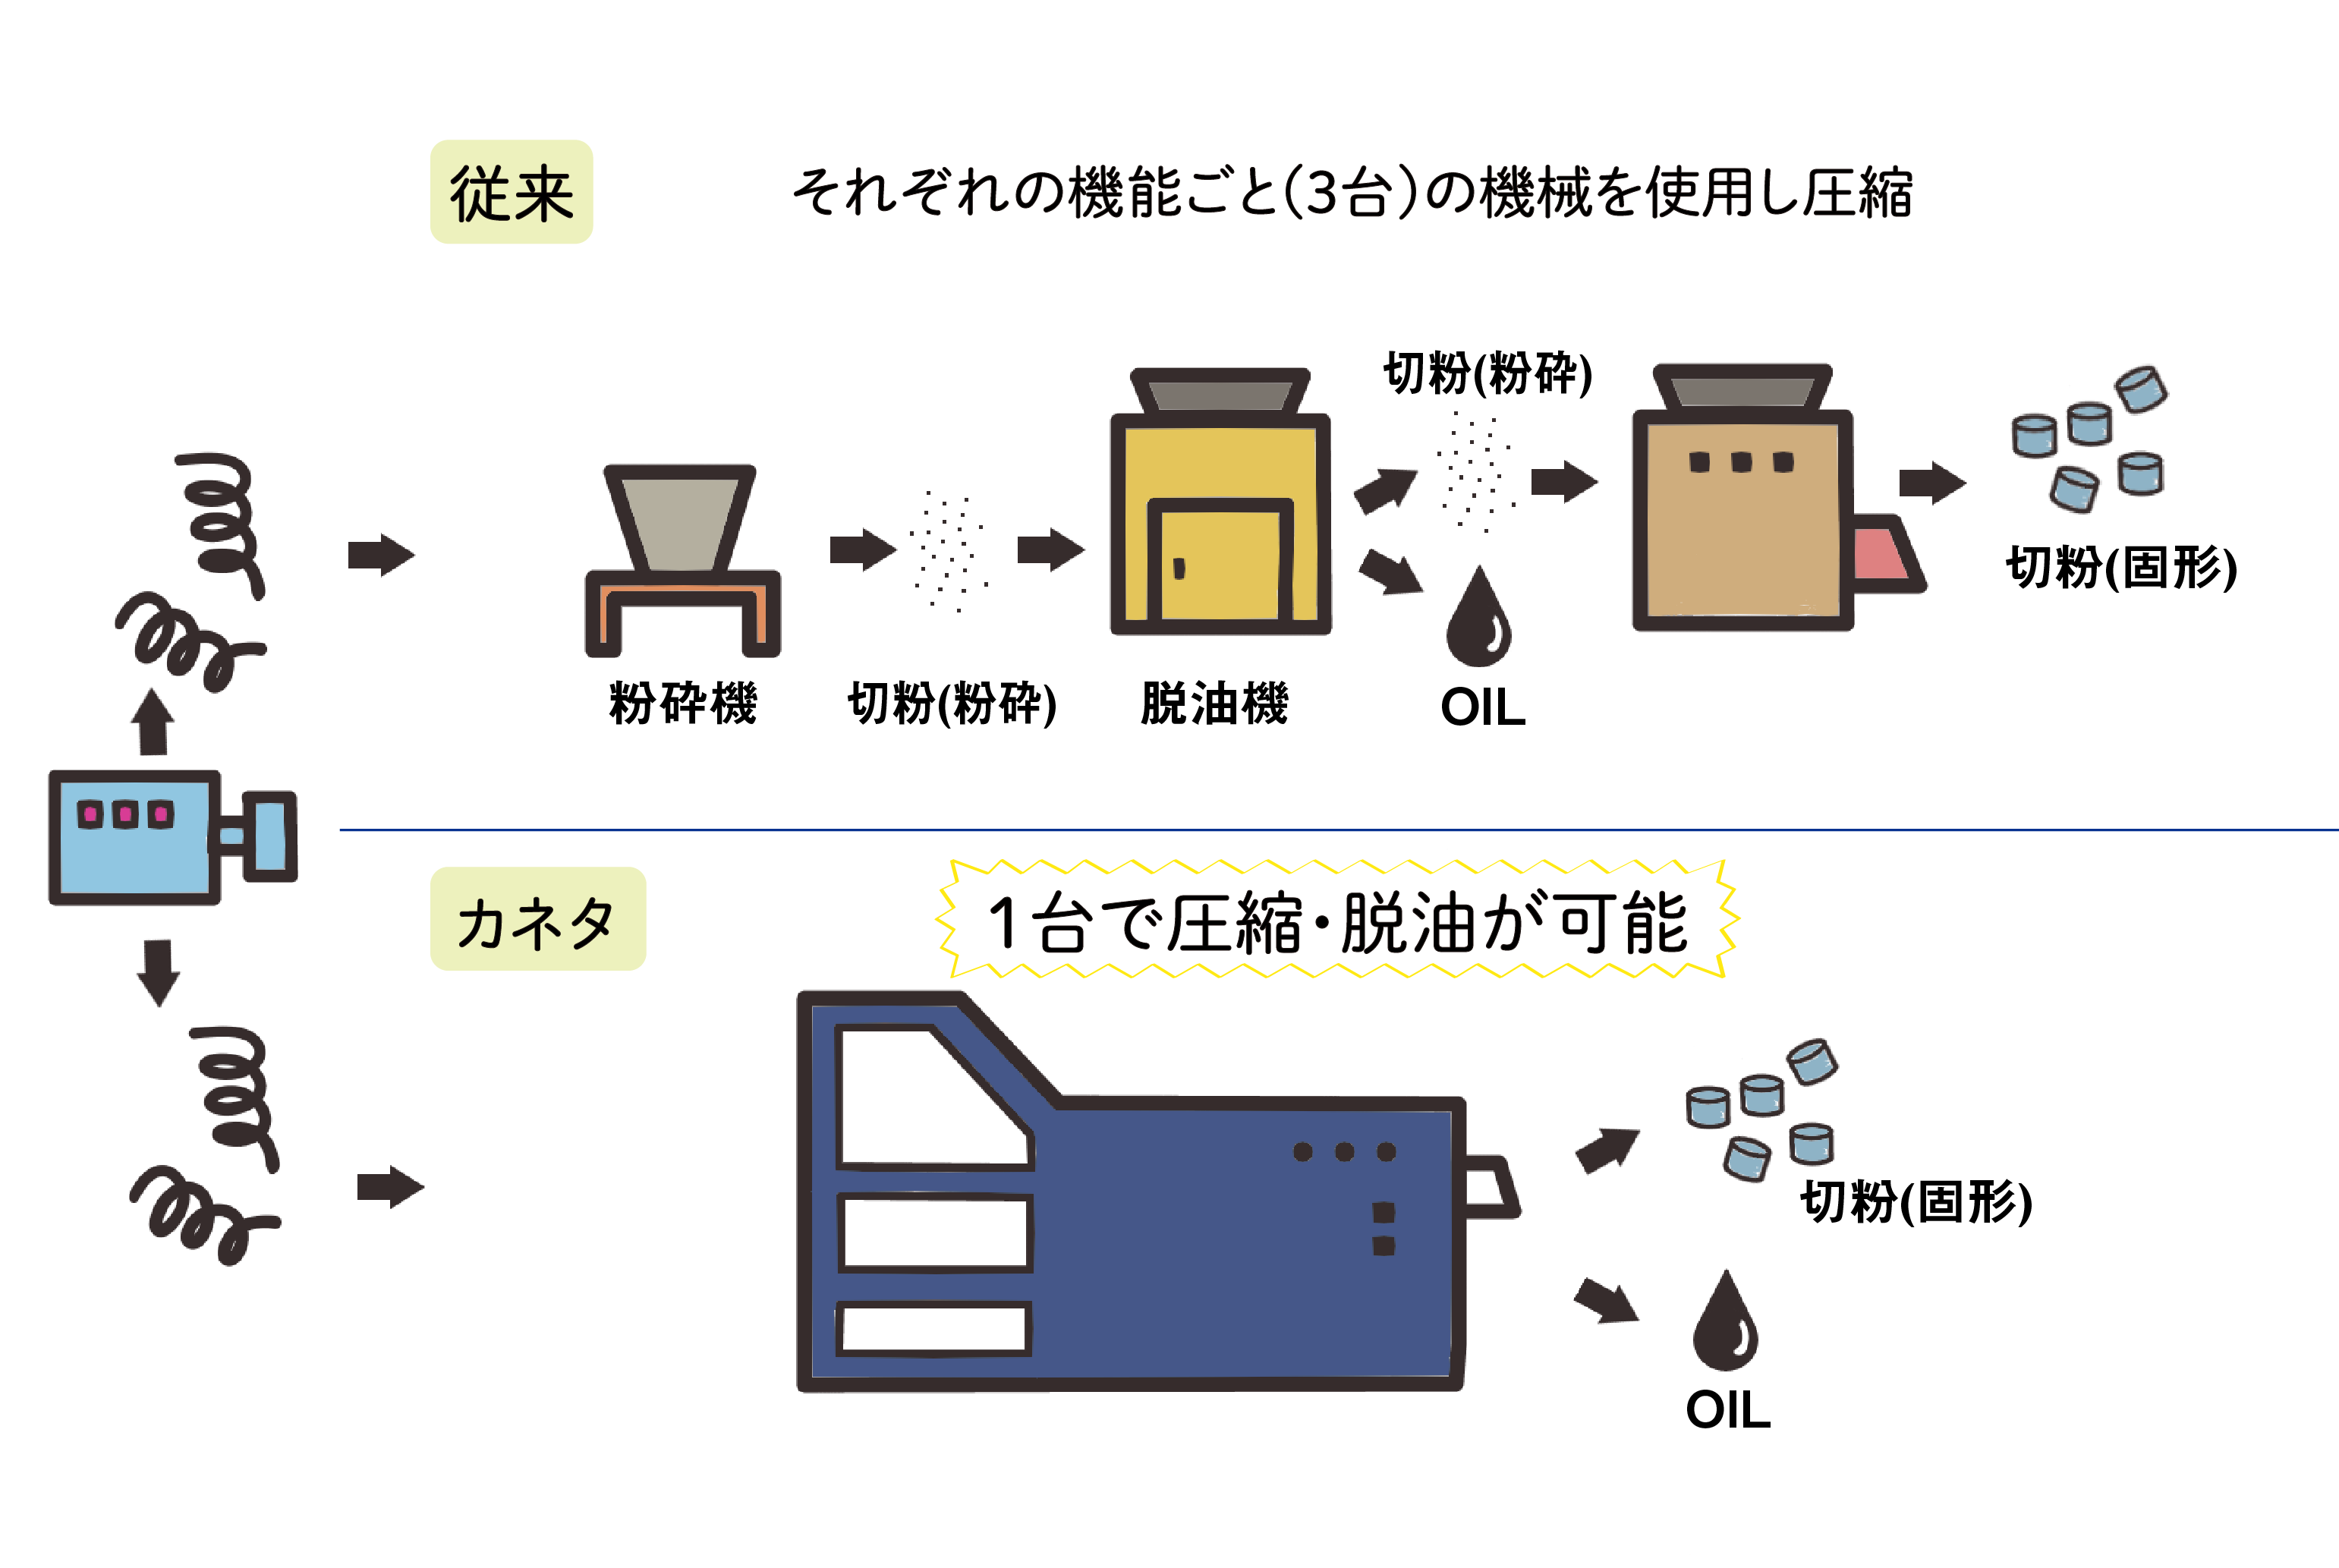 カネタ：切粉圧縮機説明図1台で圧縮脱油が可能